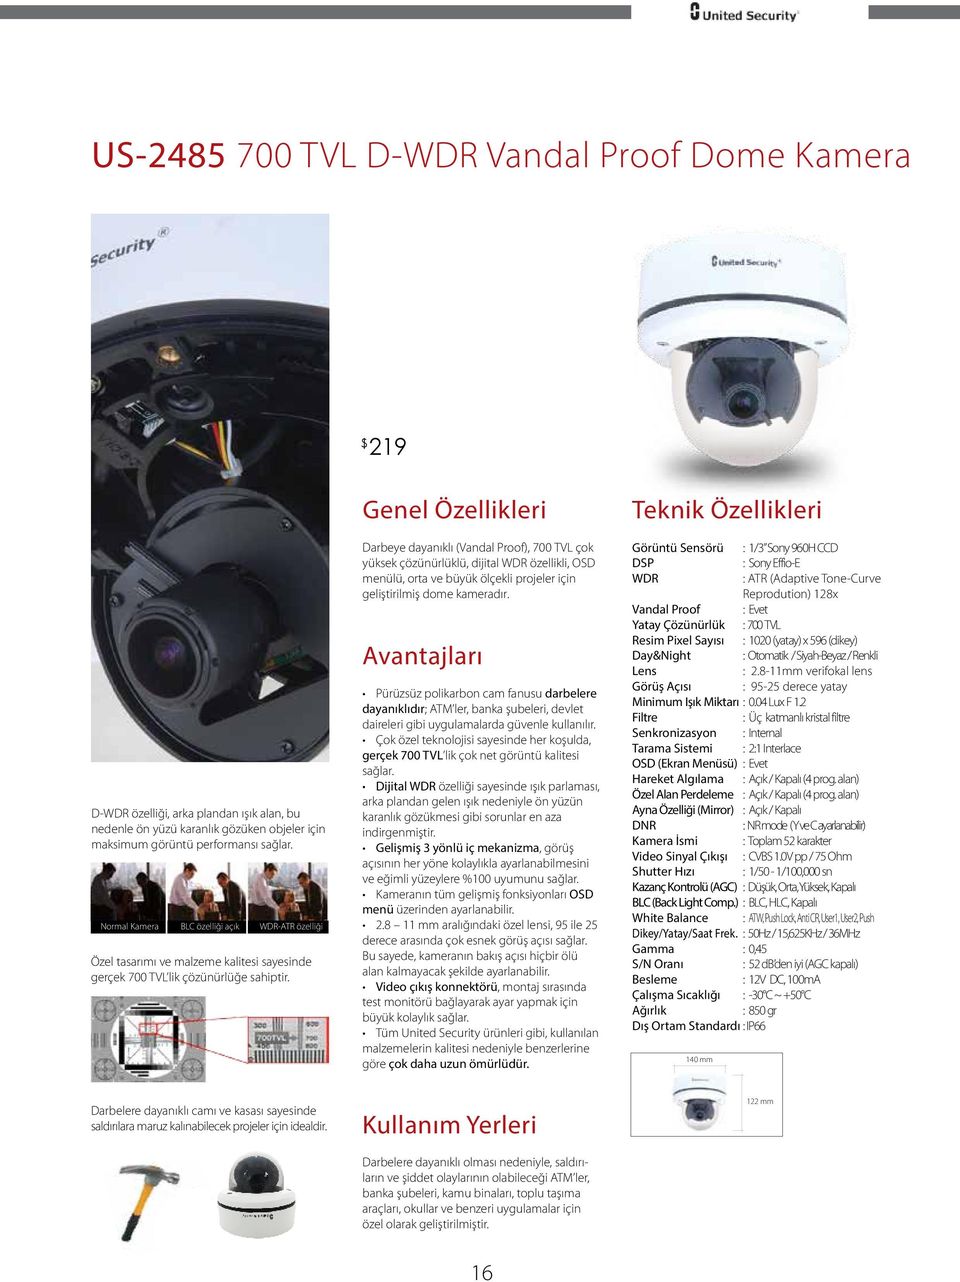 Darbeye dayanıklı (Vandal Proof), 700 TVL çok yüksek çözünürlüklü, dijital WDR özellikli, OSD menülü, orta ve büyük ölçekli projeler için geliştirilmiş dome kameradır.